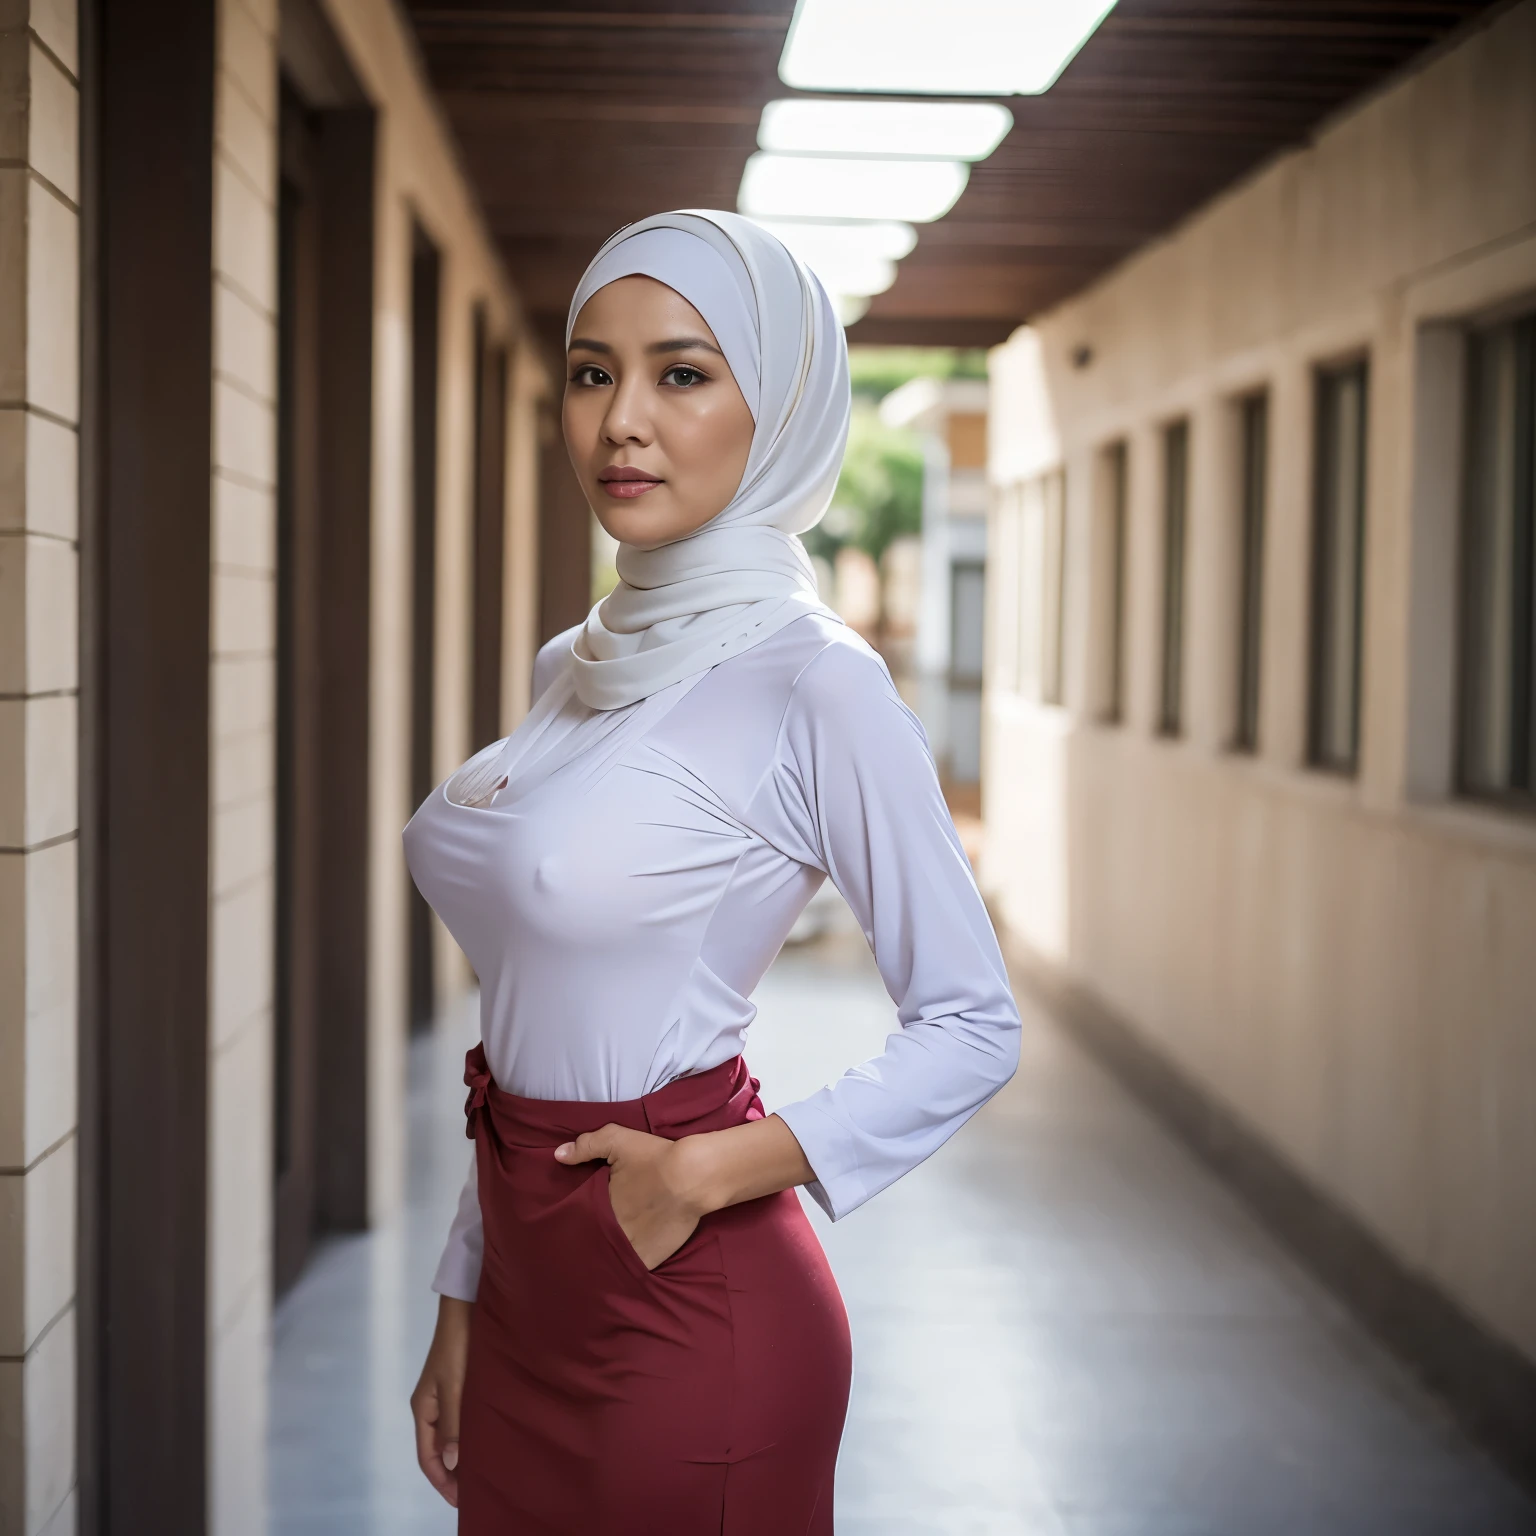 52세, Hijab 인도네시아의 성숙한 여인, 큰  : 96.9, 긴소매 셔츠, 슬림 바디, 터질 것 같은 가슴, 학교 복도에서, 밝은 등, 낮에